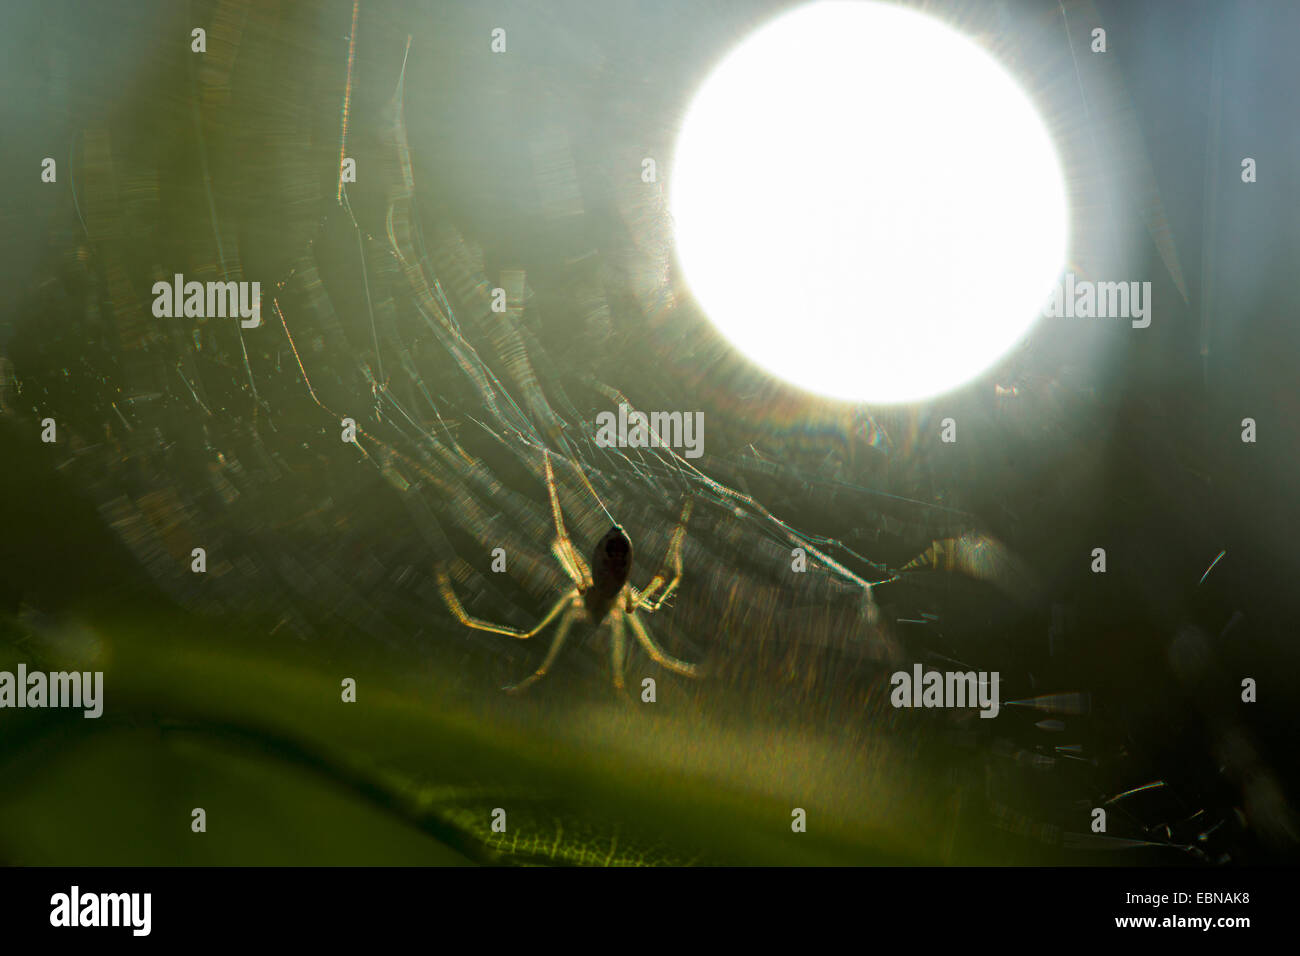 Spinne im Netz bei Gegenlicht, Deutschland Stockfoto